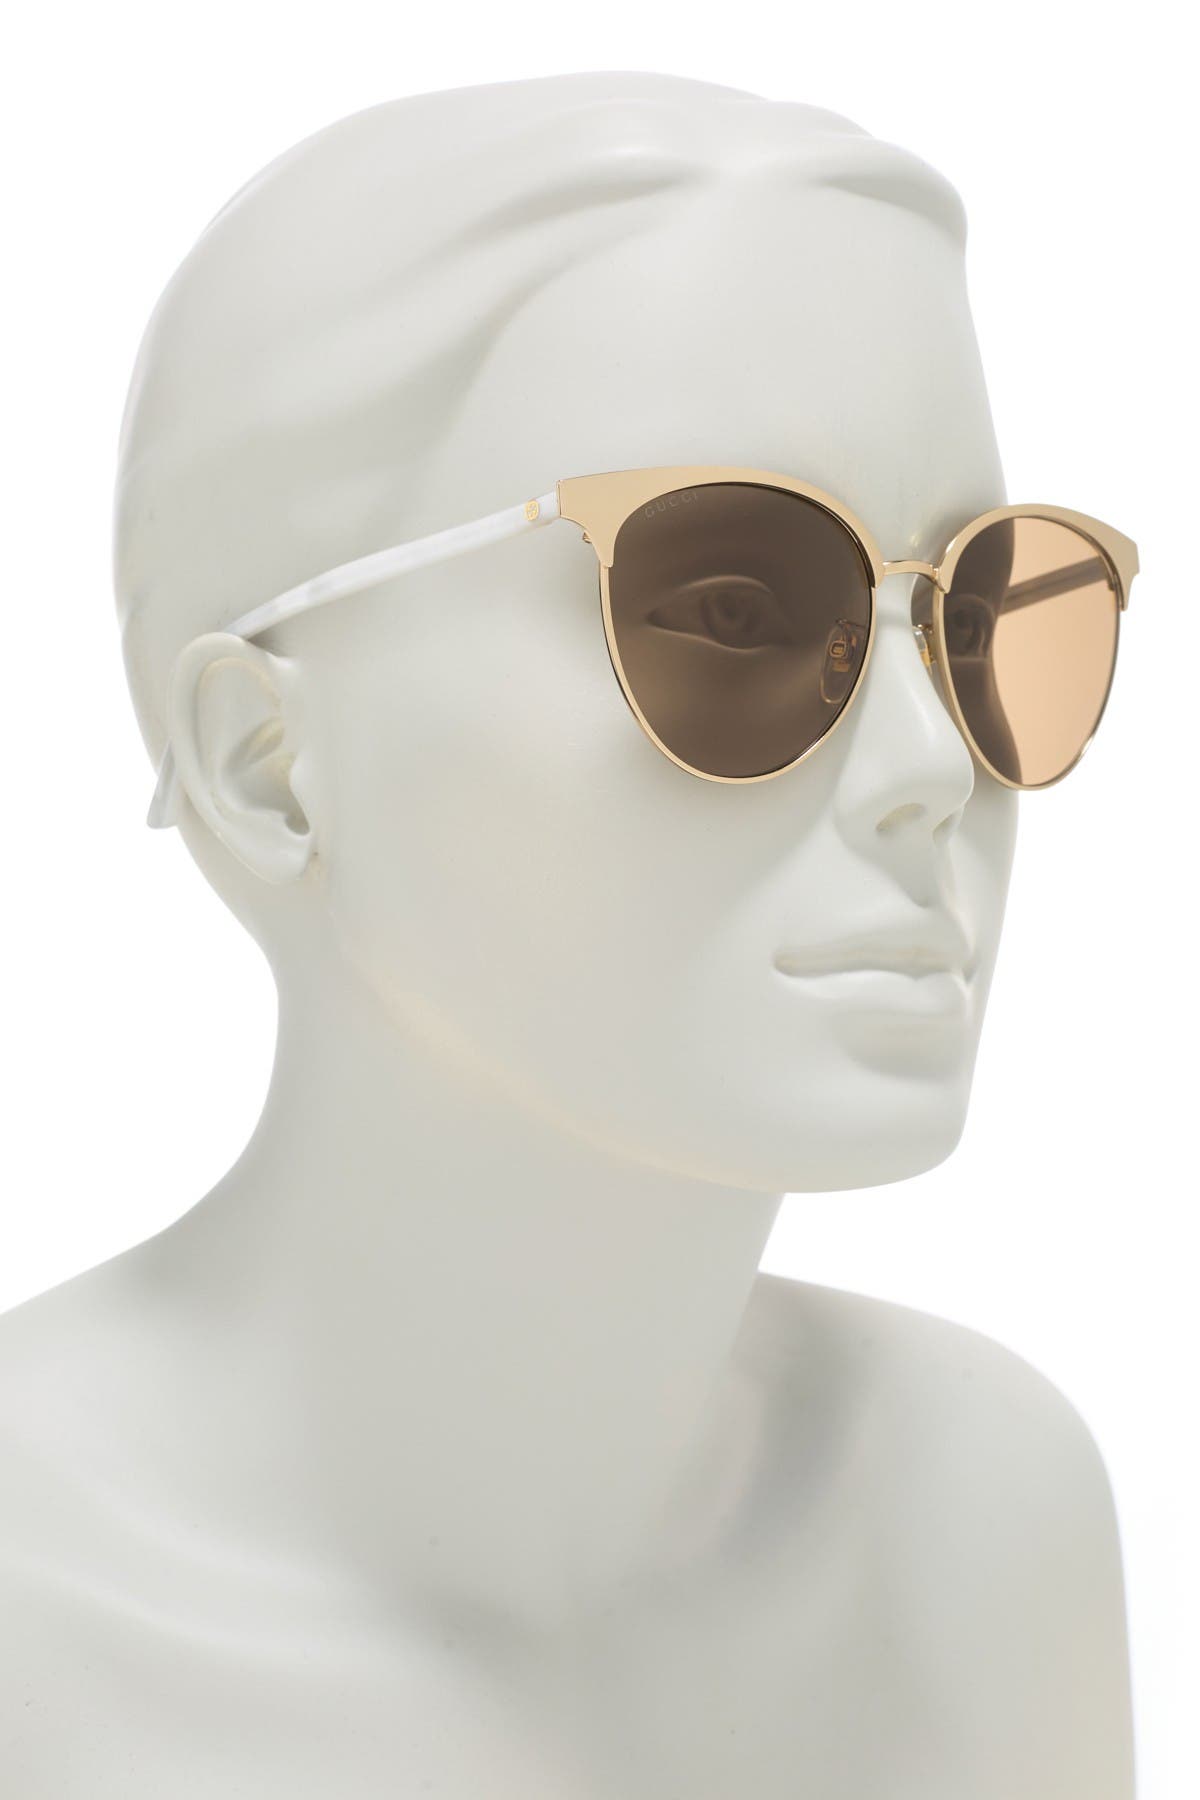 gucci 52mm clubmaster sunglasses